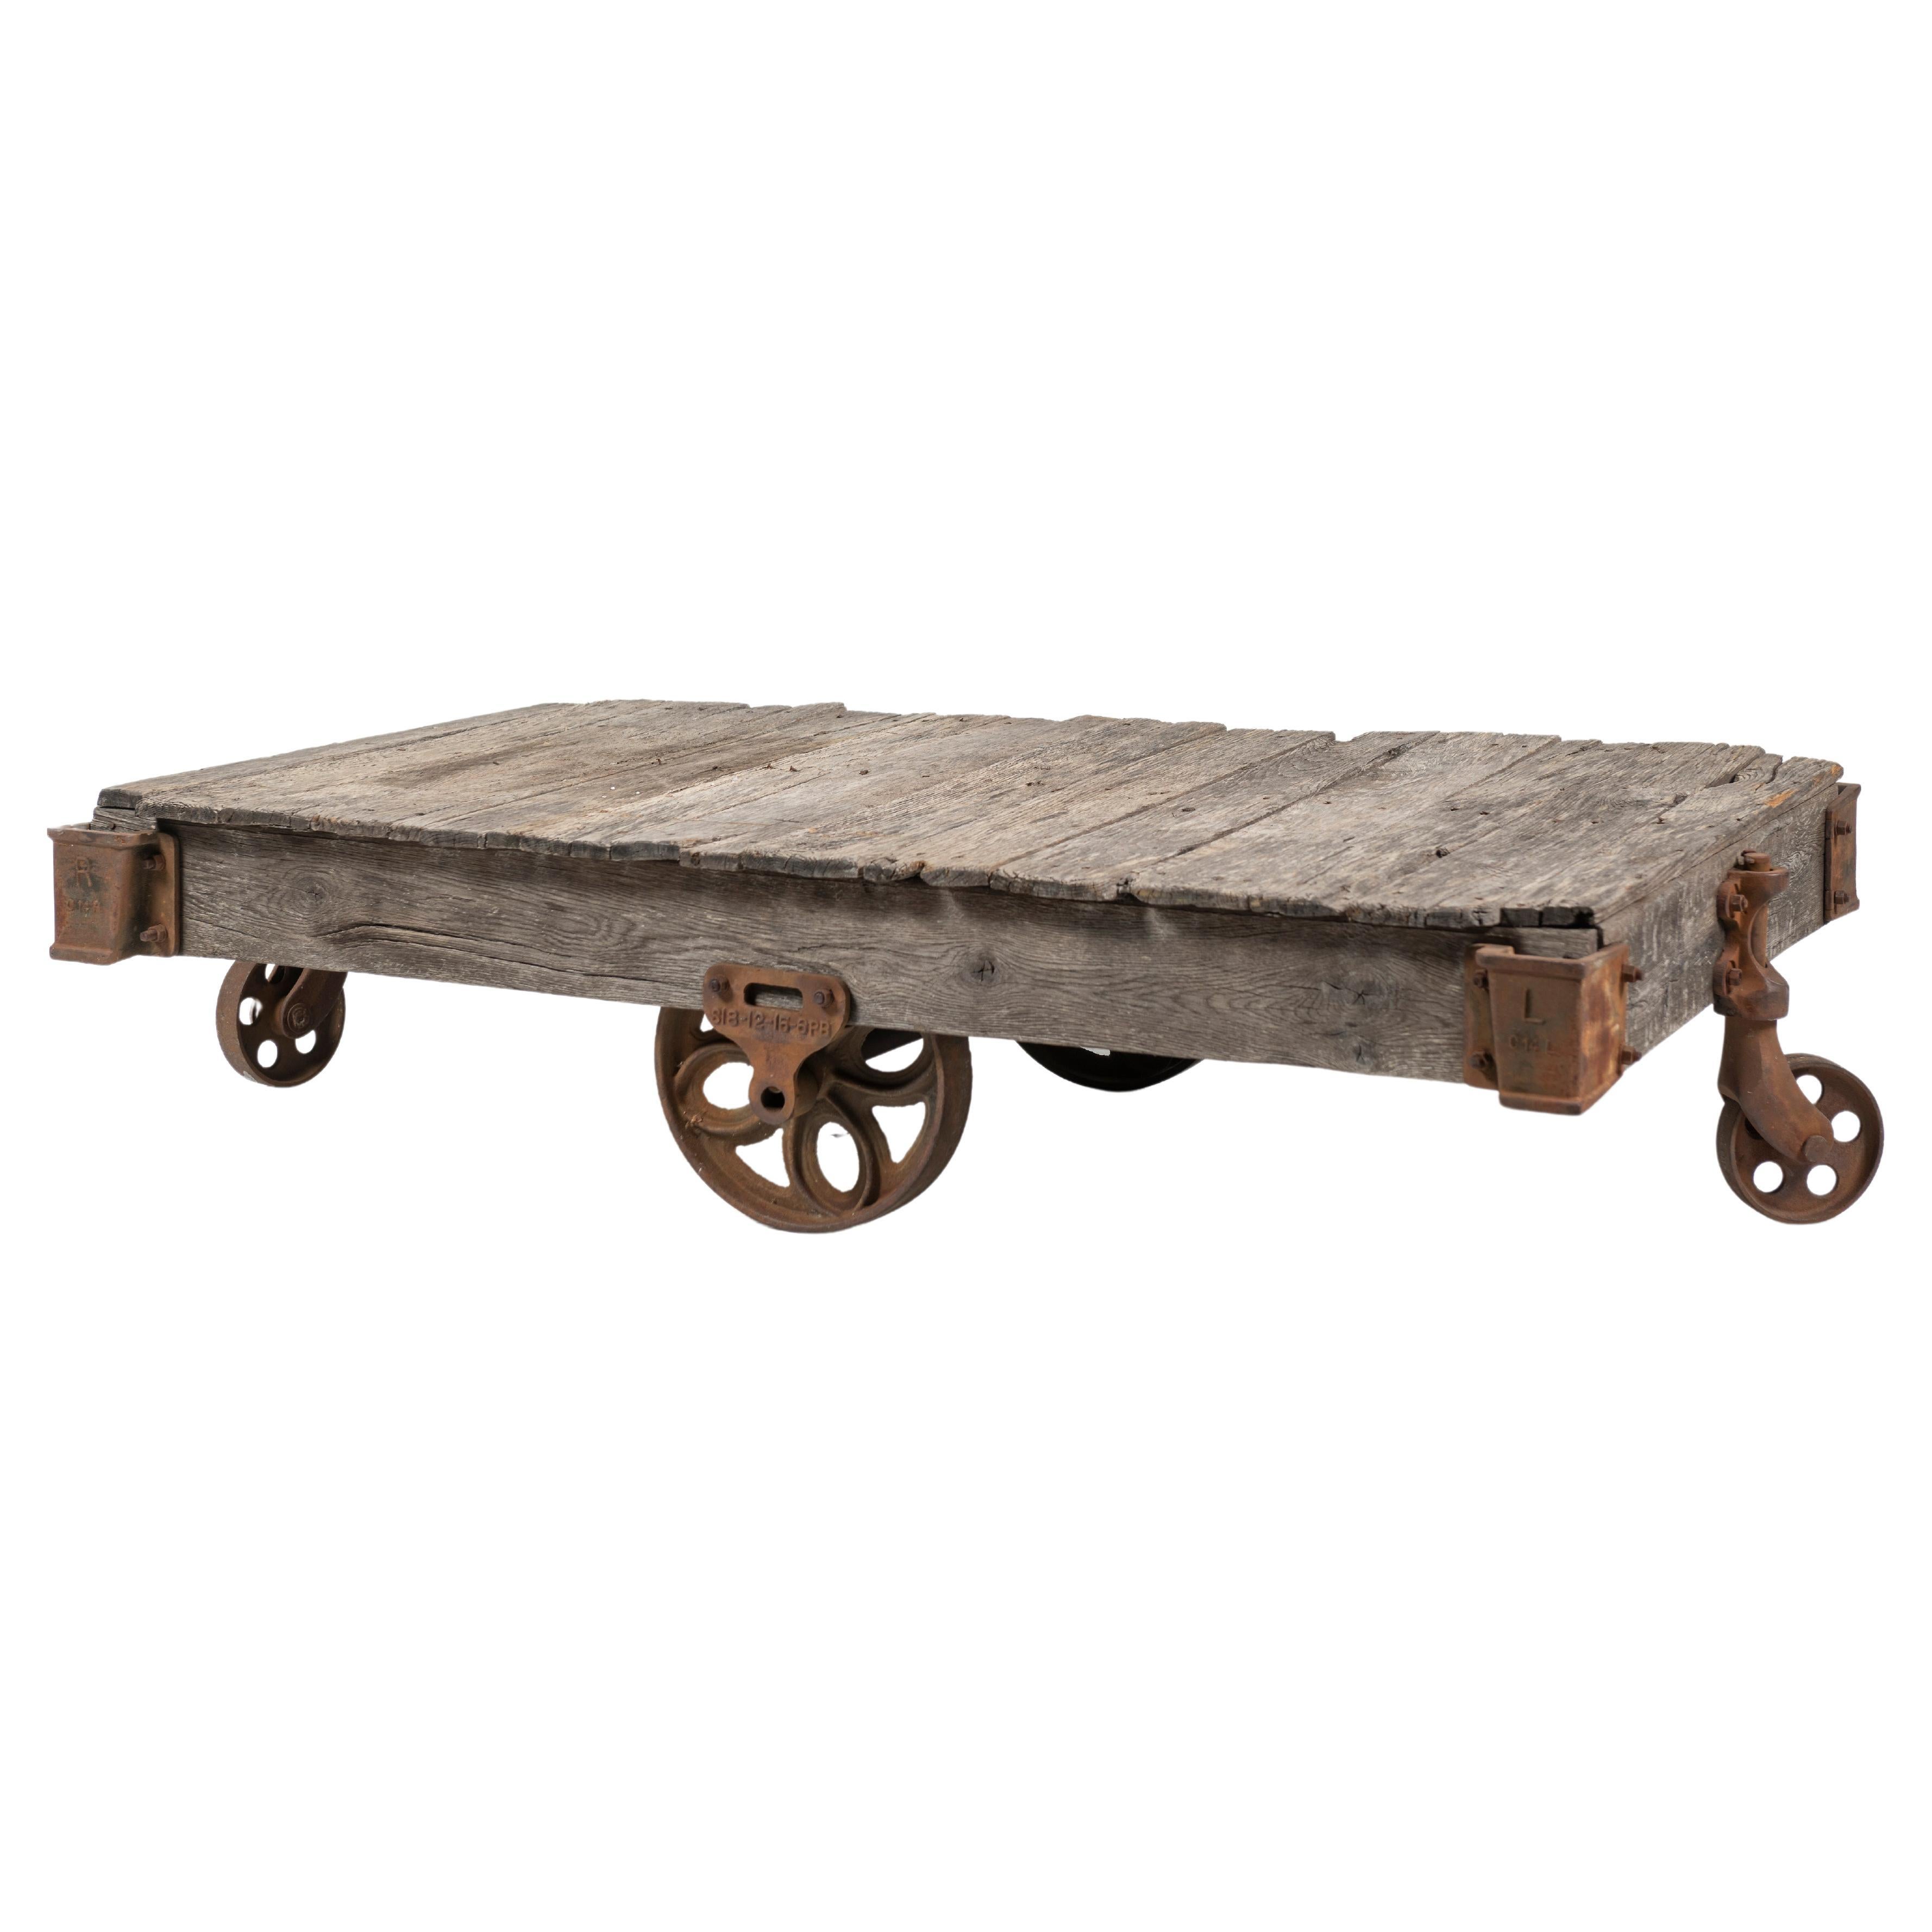 Chariot artisanal vintage comme table basse, bois rustique sur roues en fer, 20ème siècle